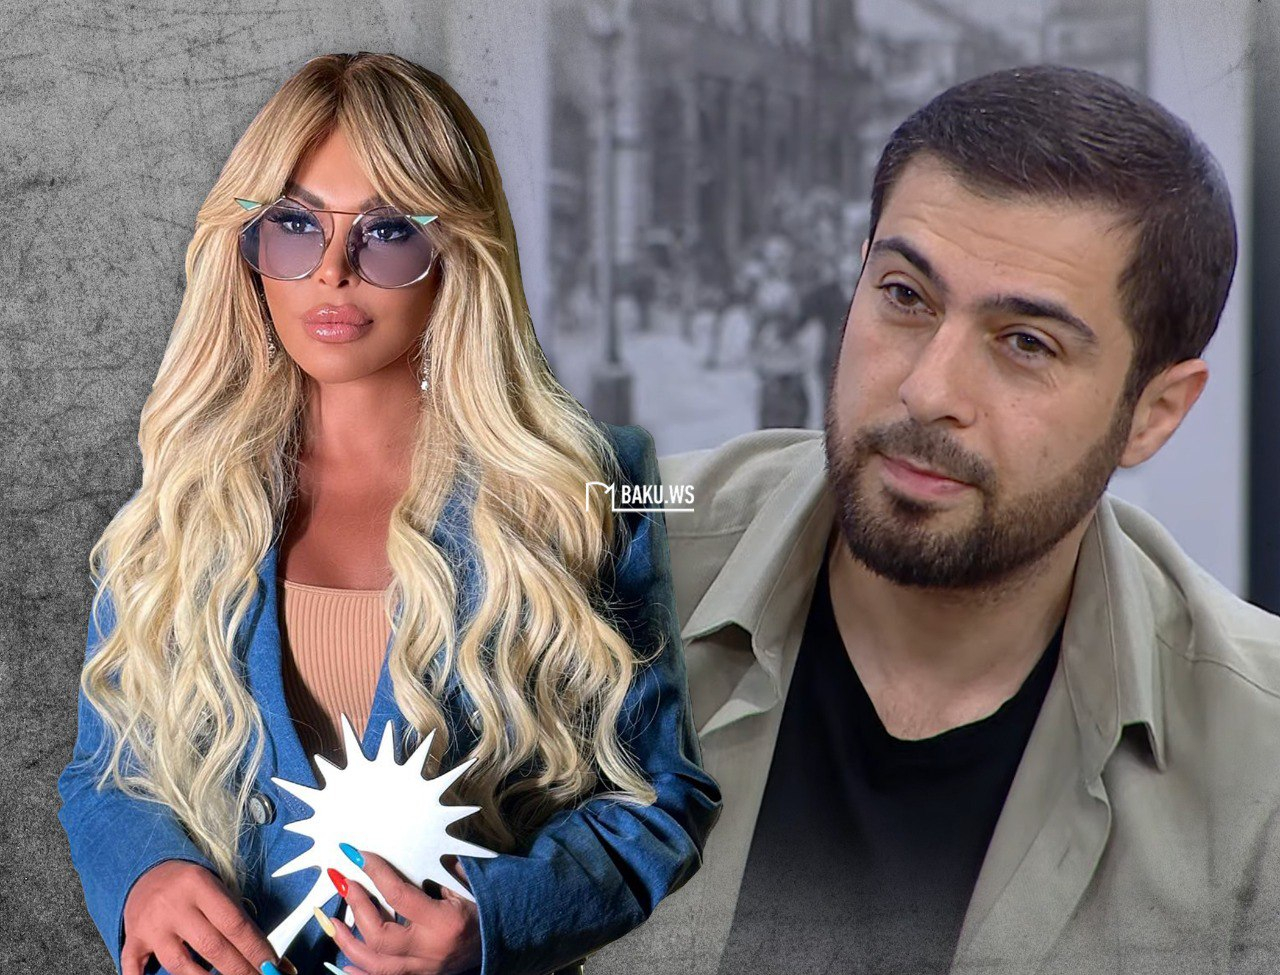 Namiq Aygünlə yeni duetindən danışdı: "Çox toxunan sözləri var" - VİDEO